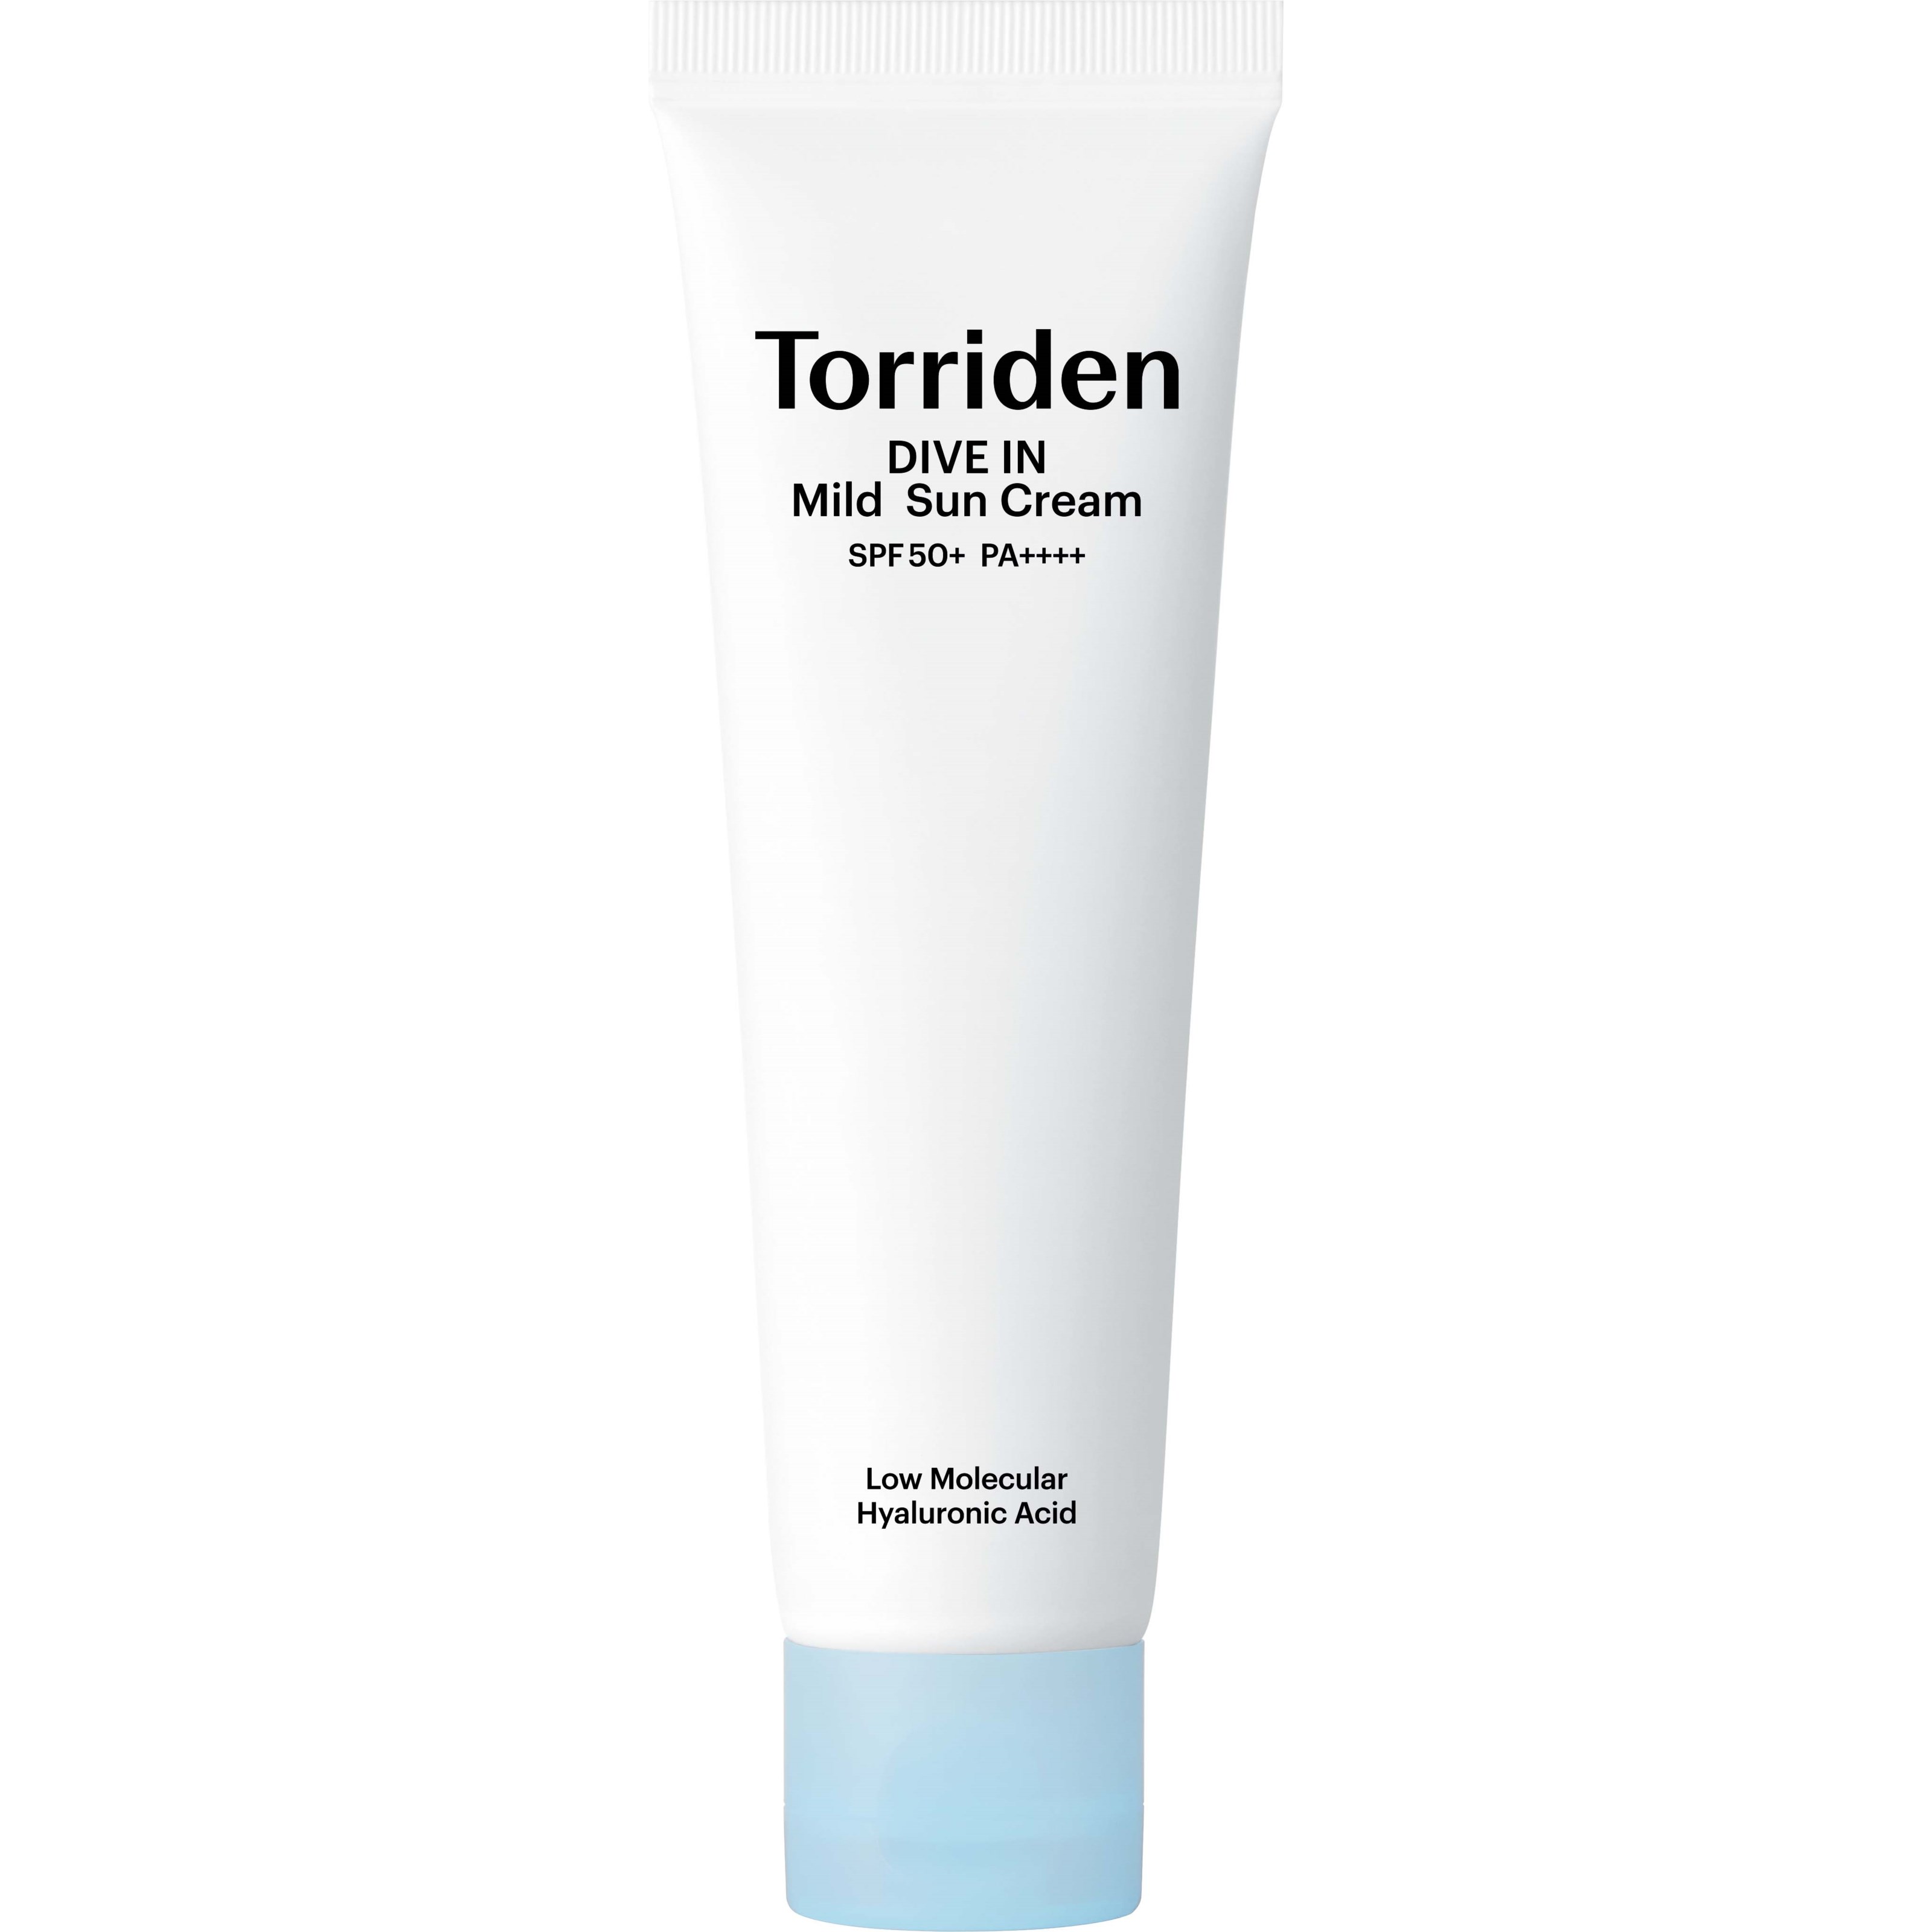 Torriden DIVE IN Low Molecular Hyaluronic Acid Mild Suncream SPF50+ 60